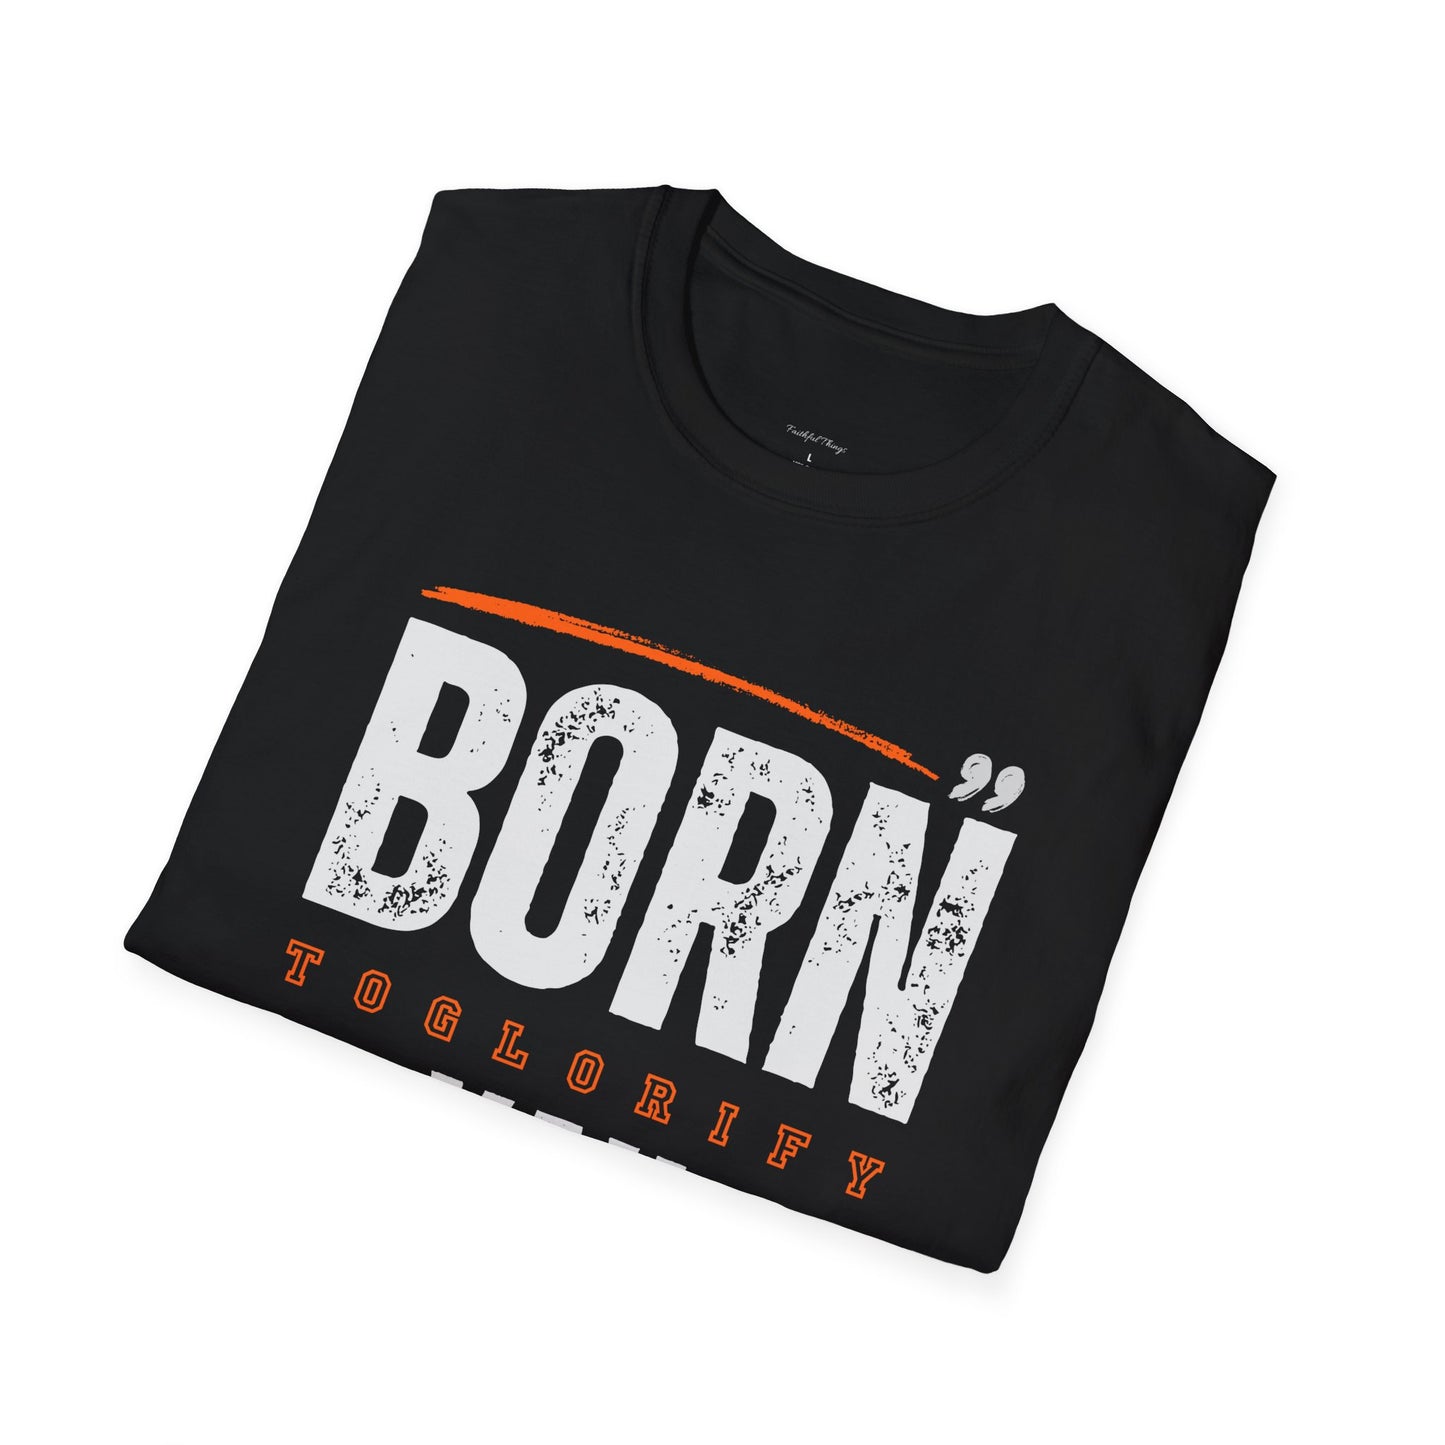 Born to Glorify YAH Unisex Soft Style T-Shirt